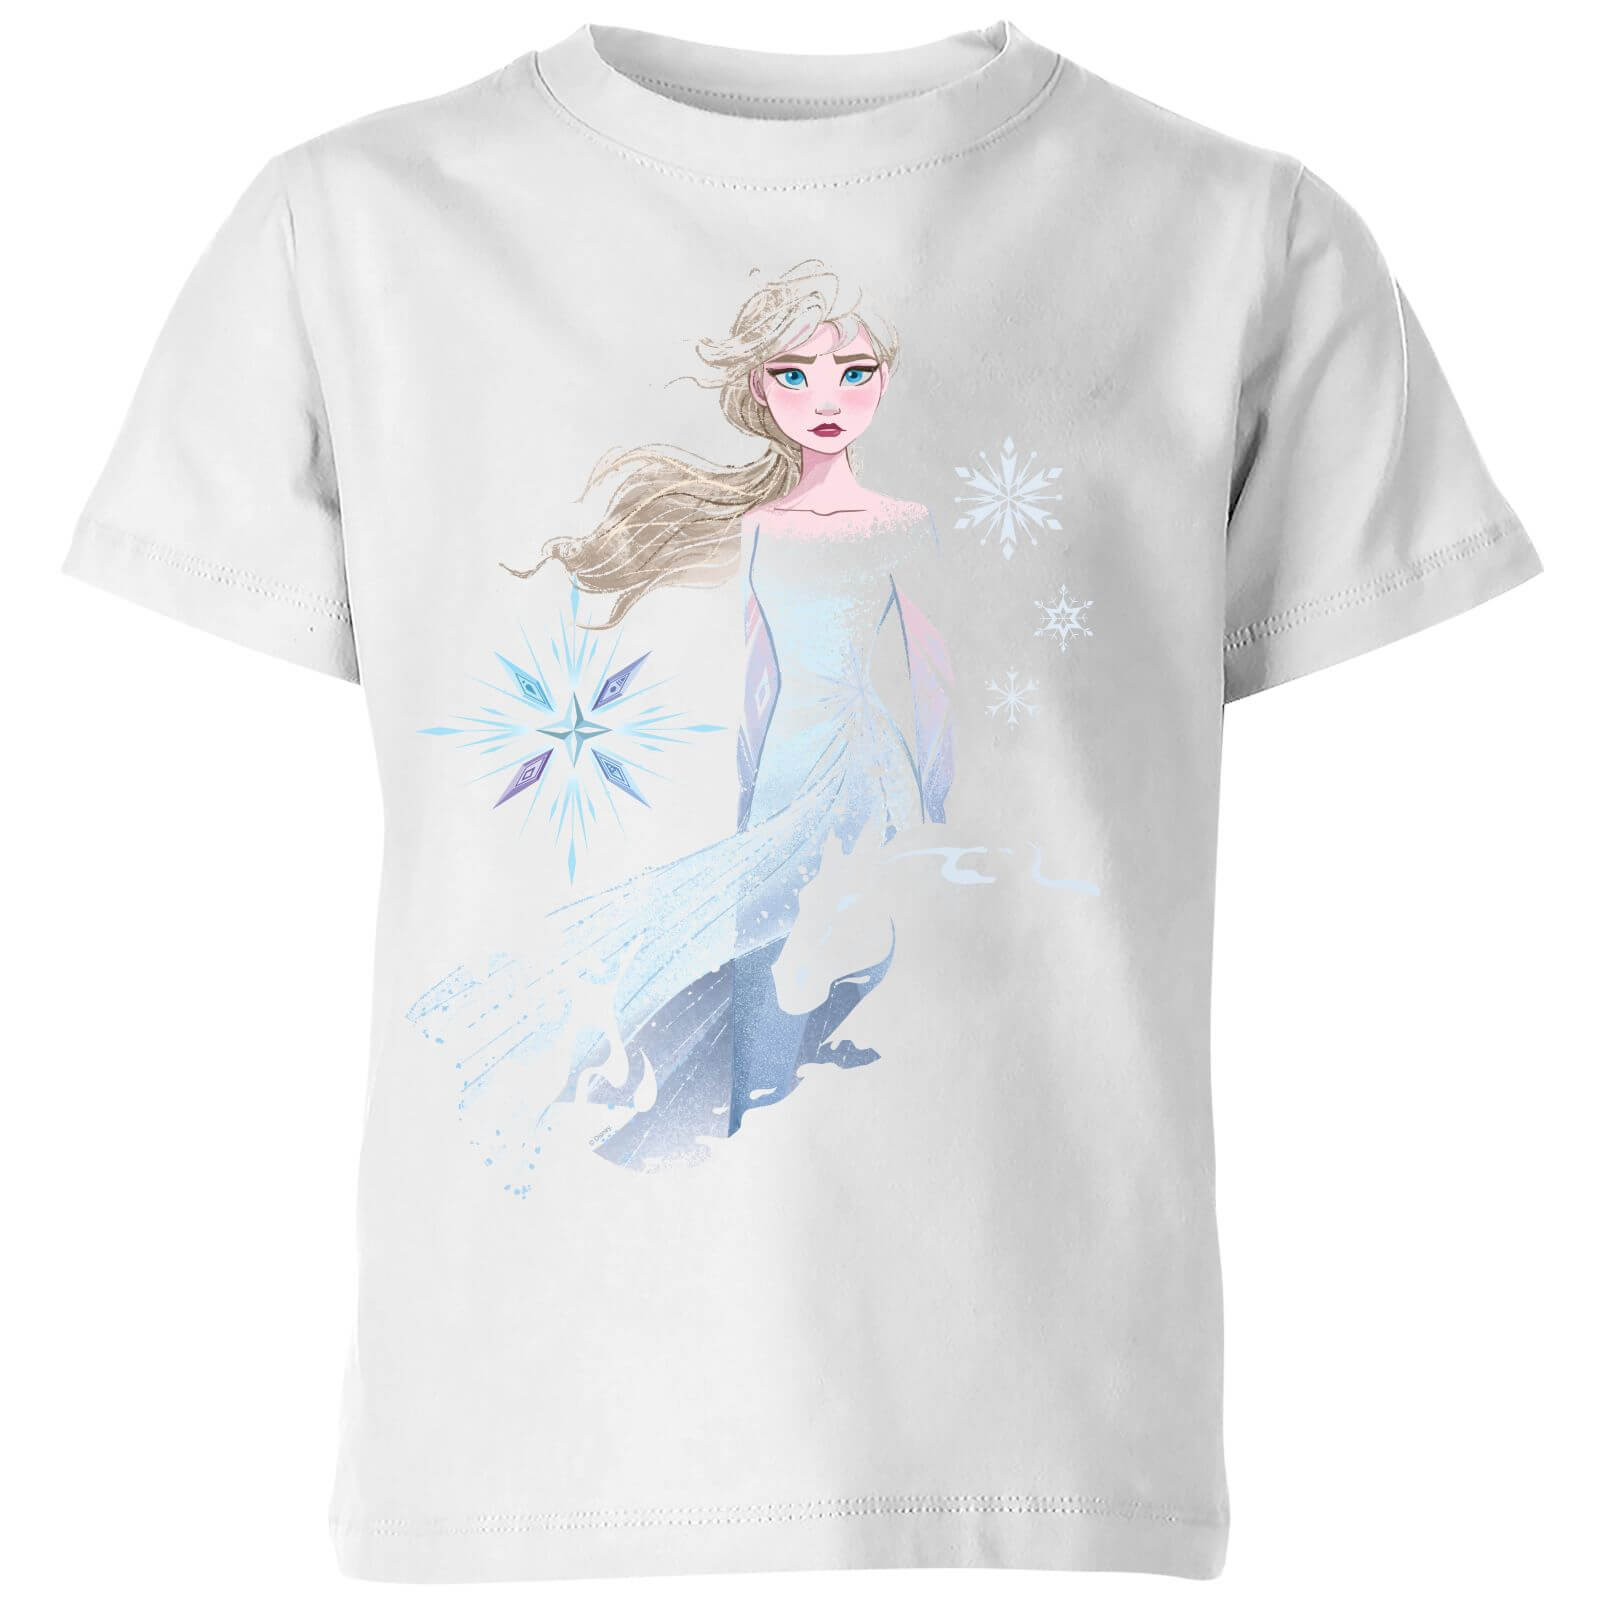 Disney Frozen 2 Nokk Sihouette Kids' T-Shirt - White - 5-6 Years - White